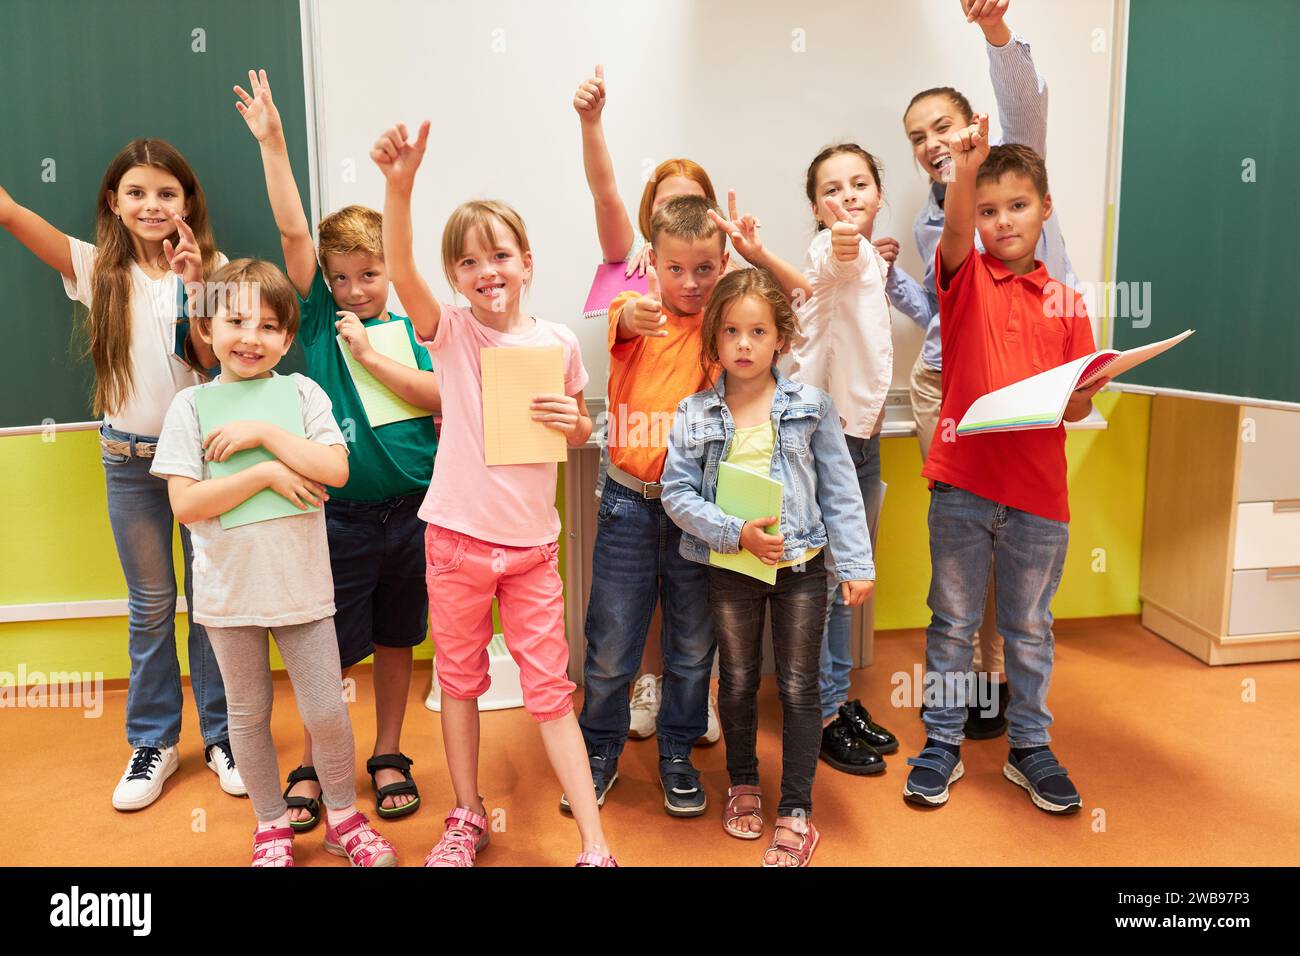 Portrait of happy school kids gesturing with teacher in classroom Stock Photo